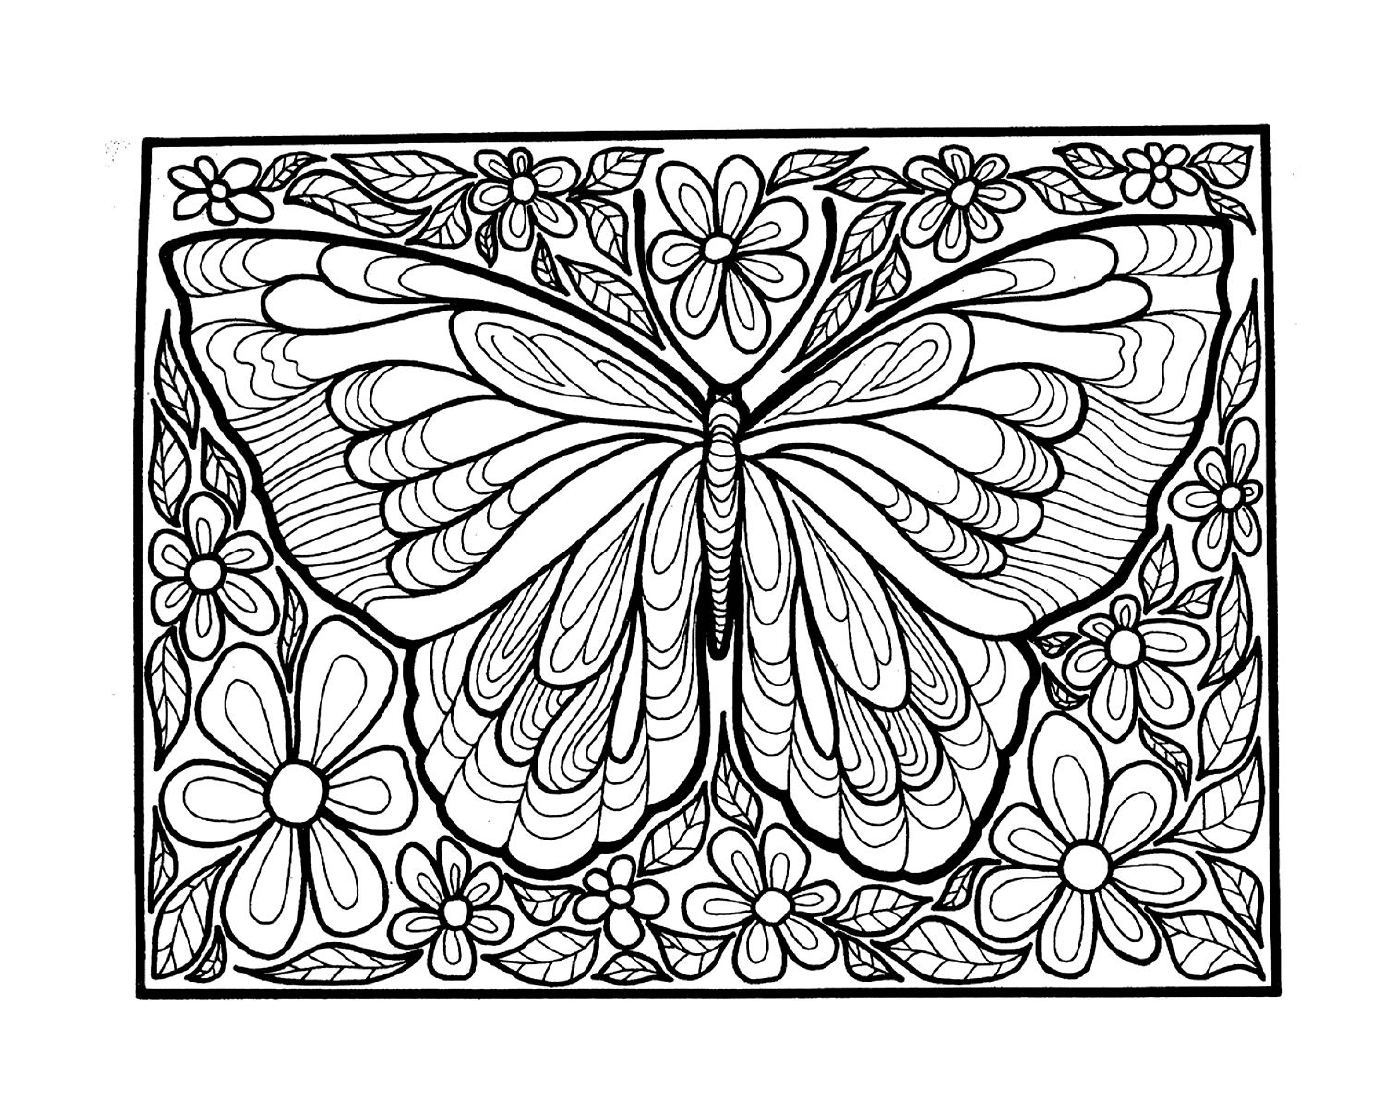  borboleta adulta com asas 